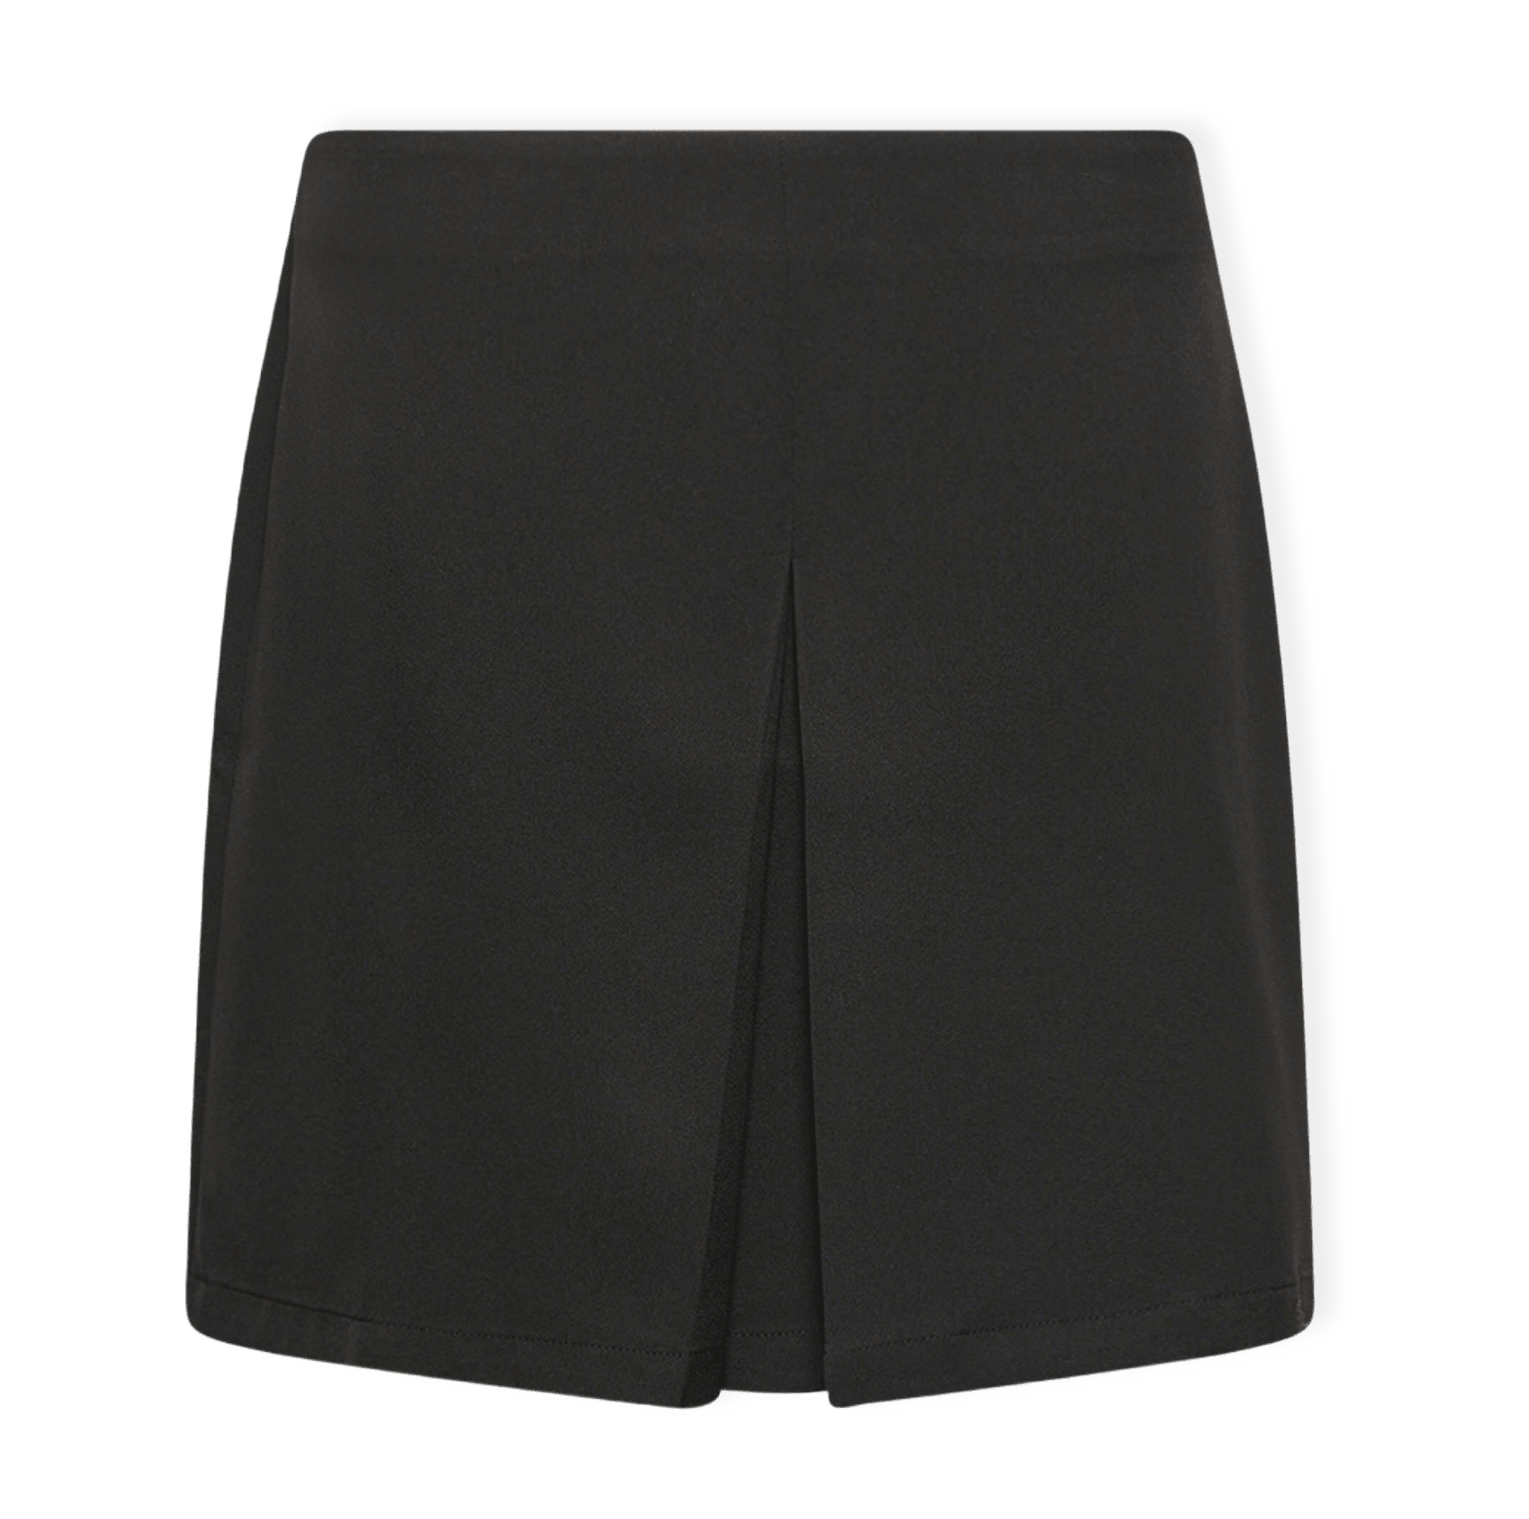 Bossy Skirt - Black från Noella